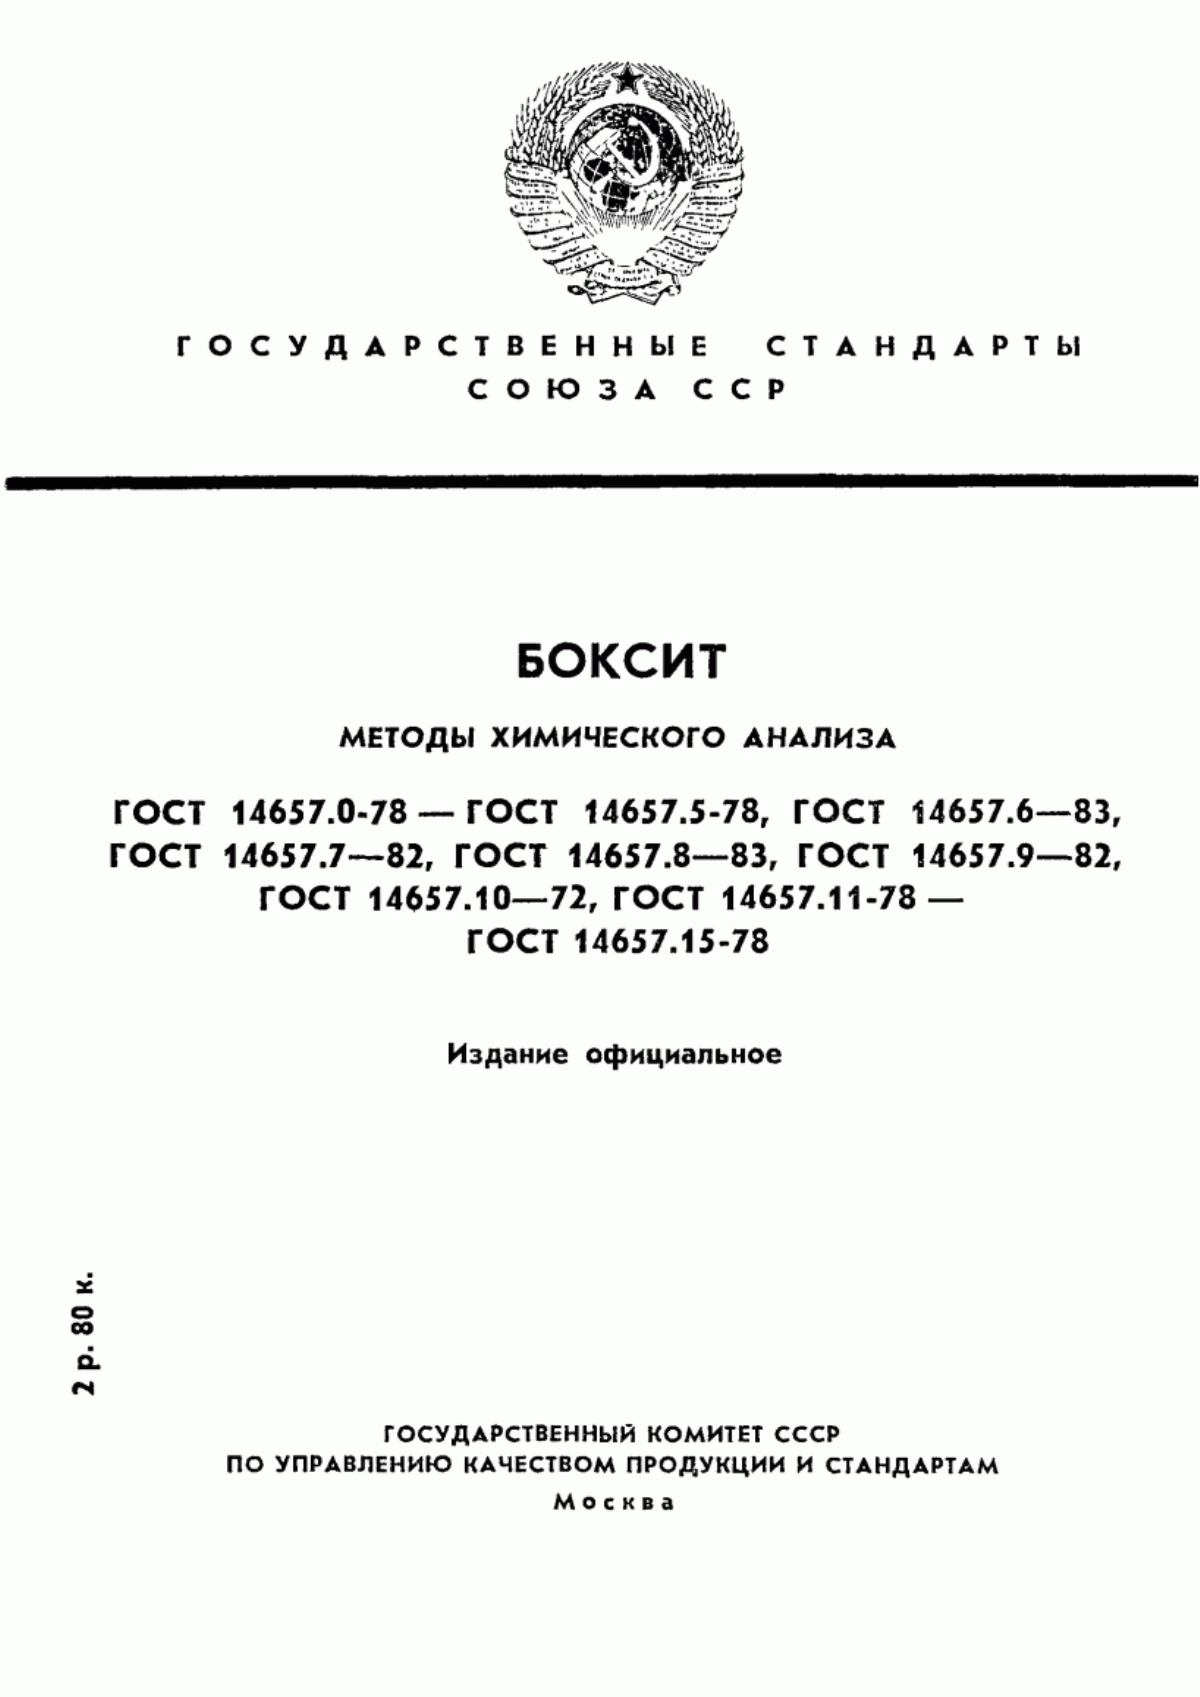 ГОСТ 14657.0-78 Боксит. Общие требования к методам химического анализа